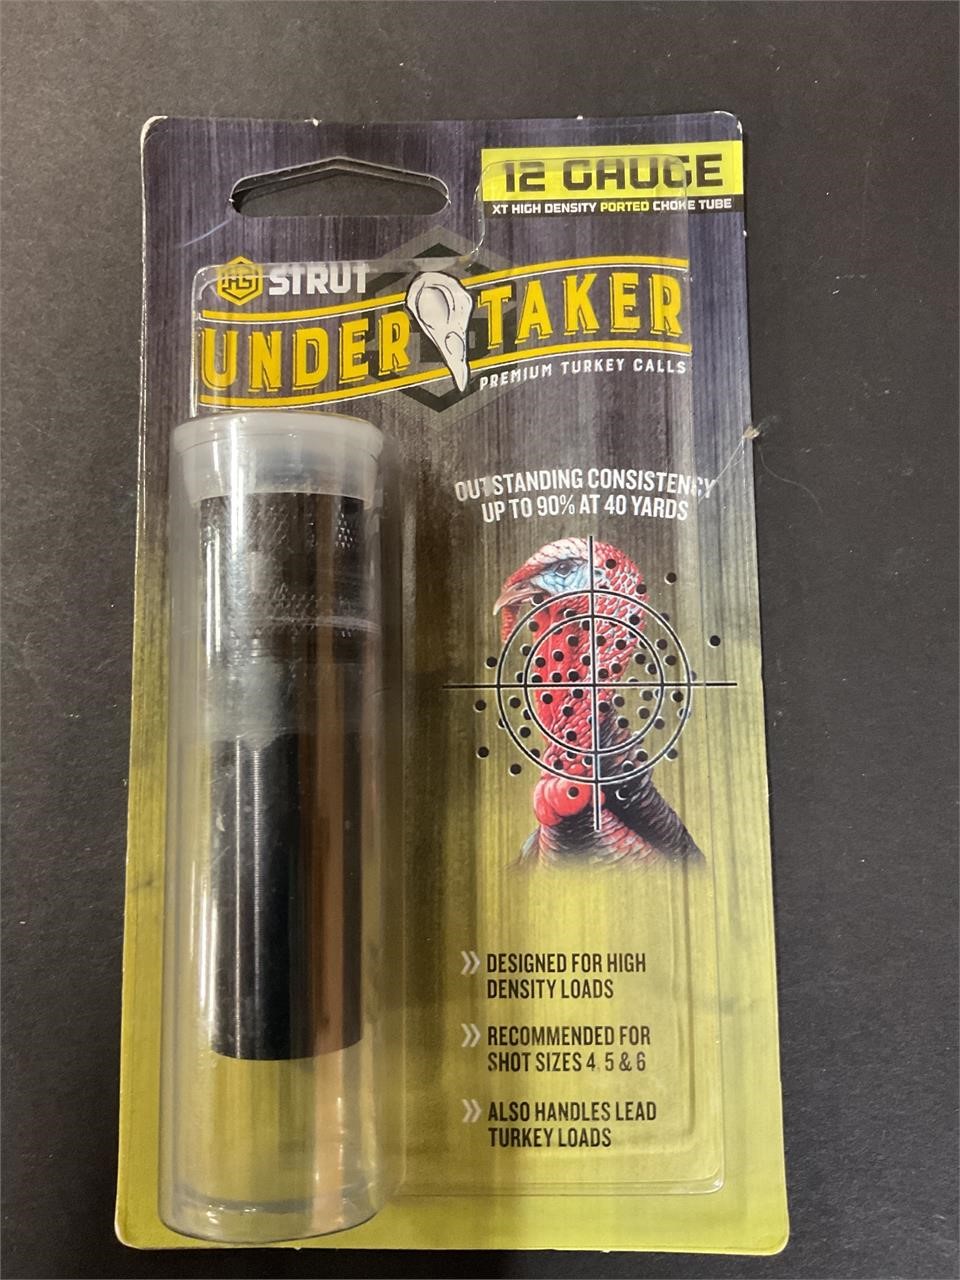 Strut 12 gauge undertaker choke tube